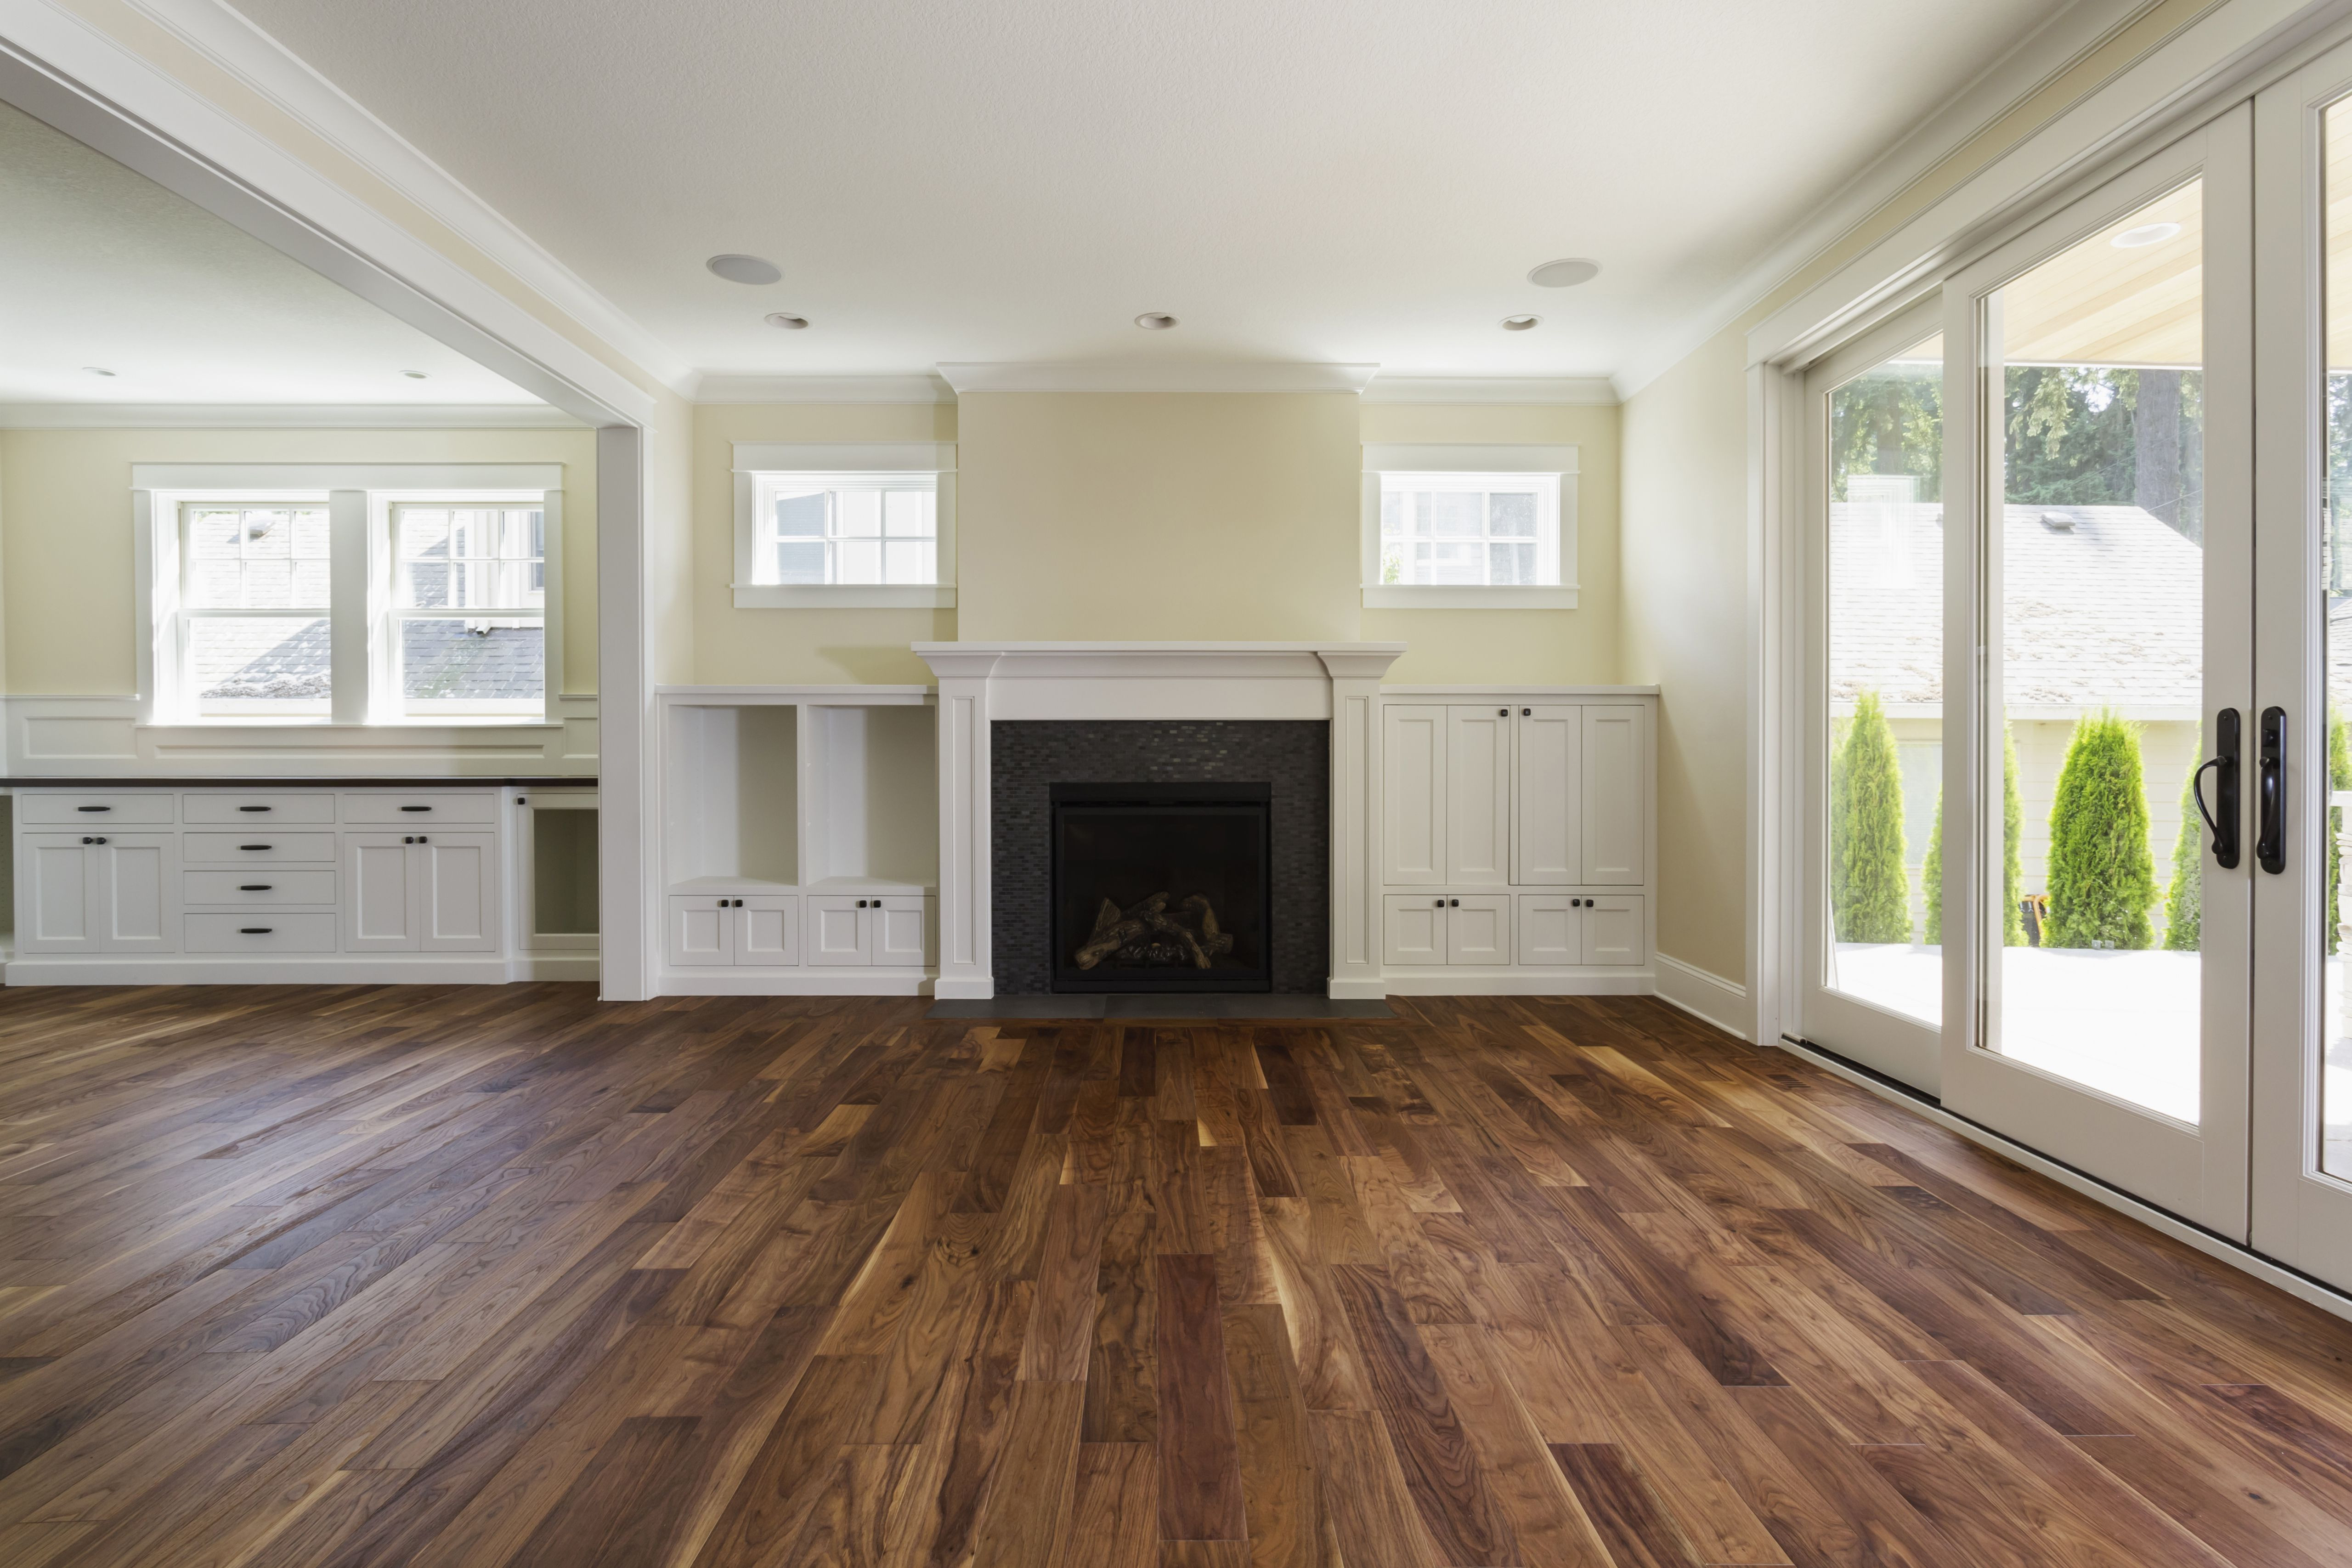 Wood Floor Pictures Of Rooms – Flooring Tips